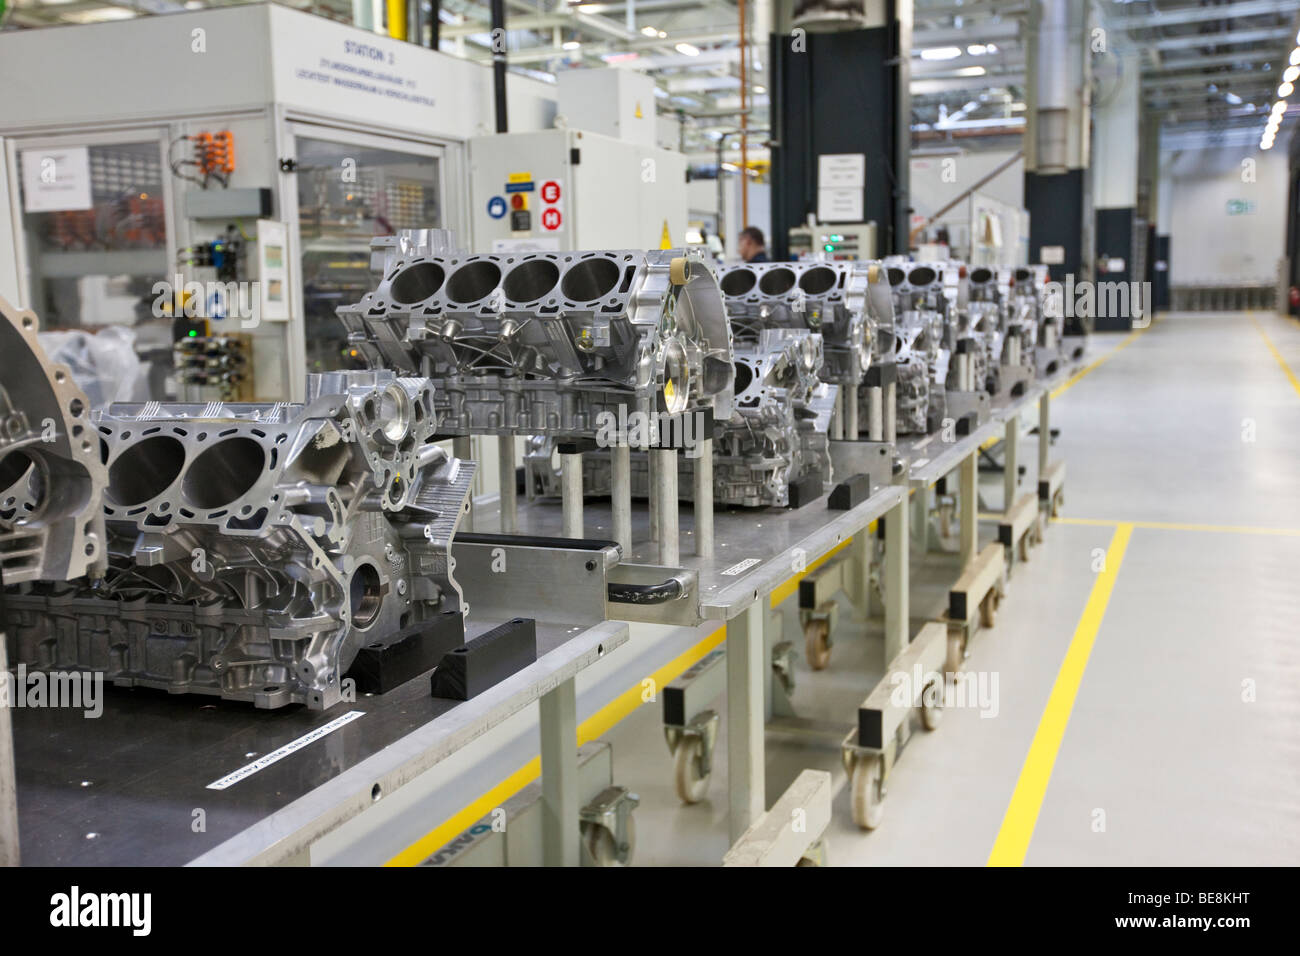 Aston Martin V8 engine, Aston Martin engine plant in Cologne, Rhineland-Palatinate, Germany, Europe Stock Photo